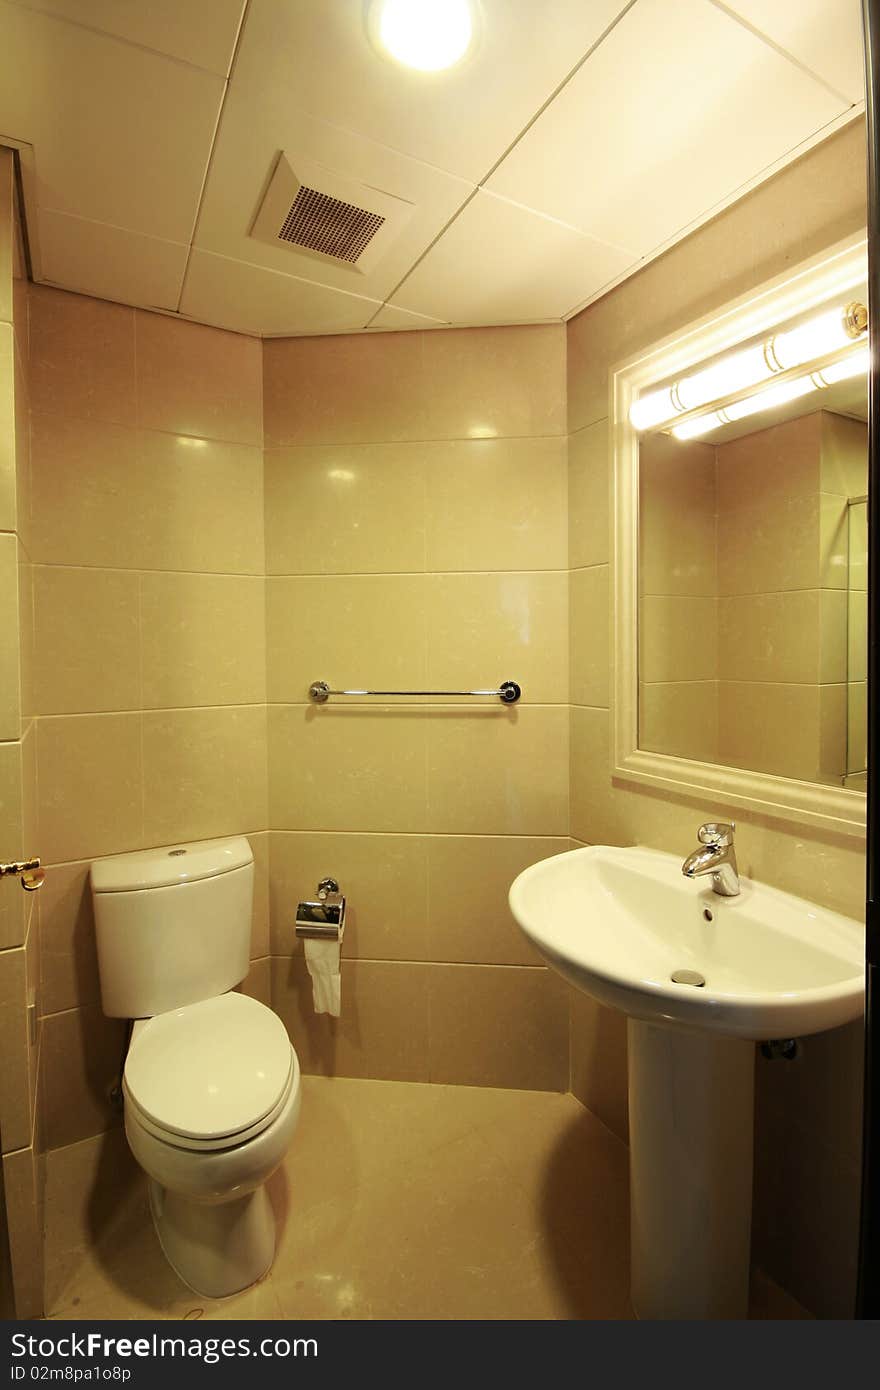 A bathroom of an apartment